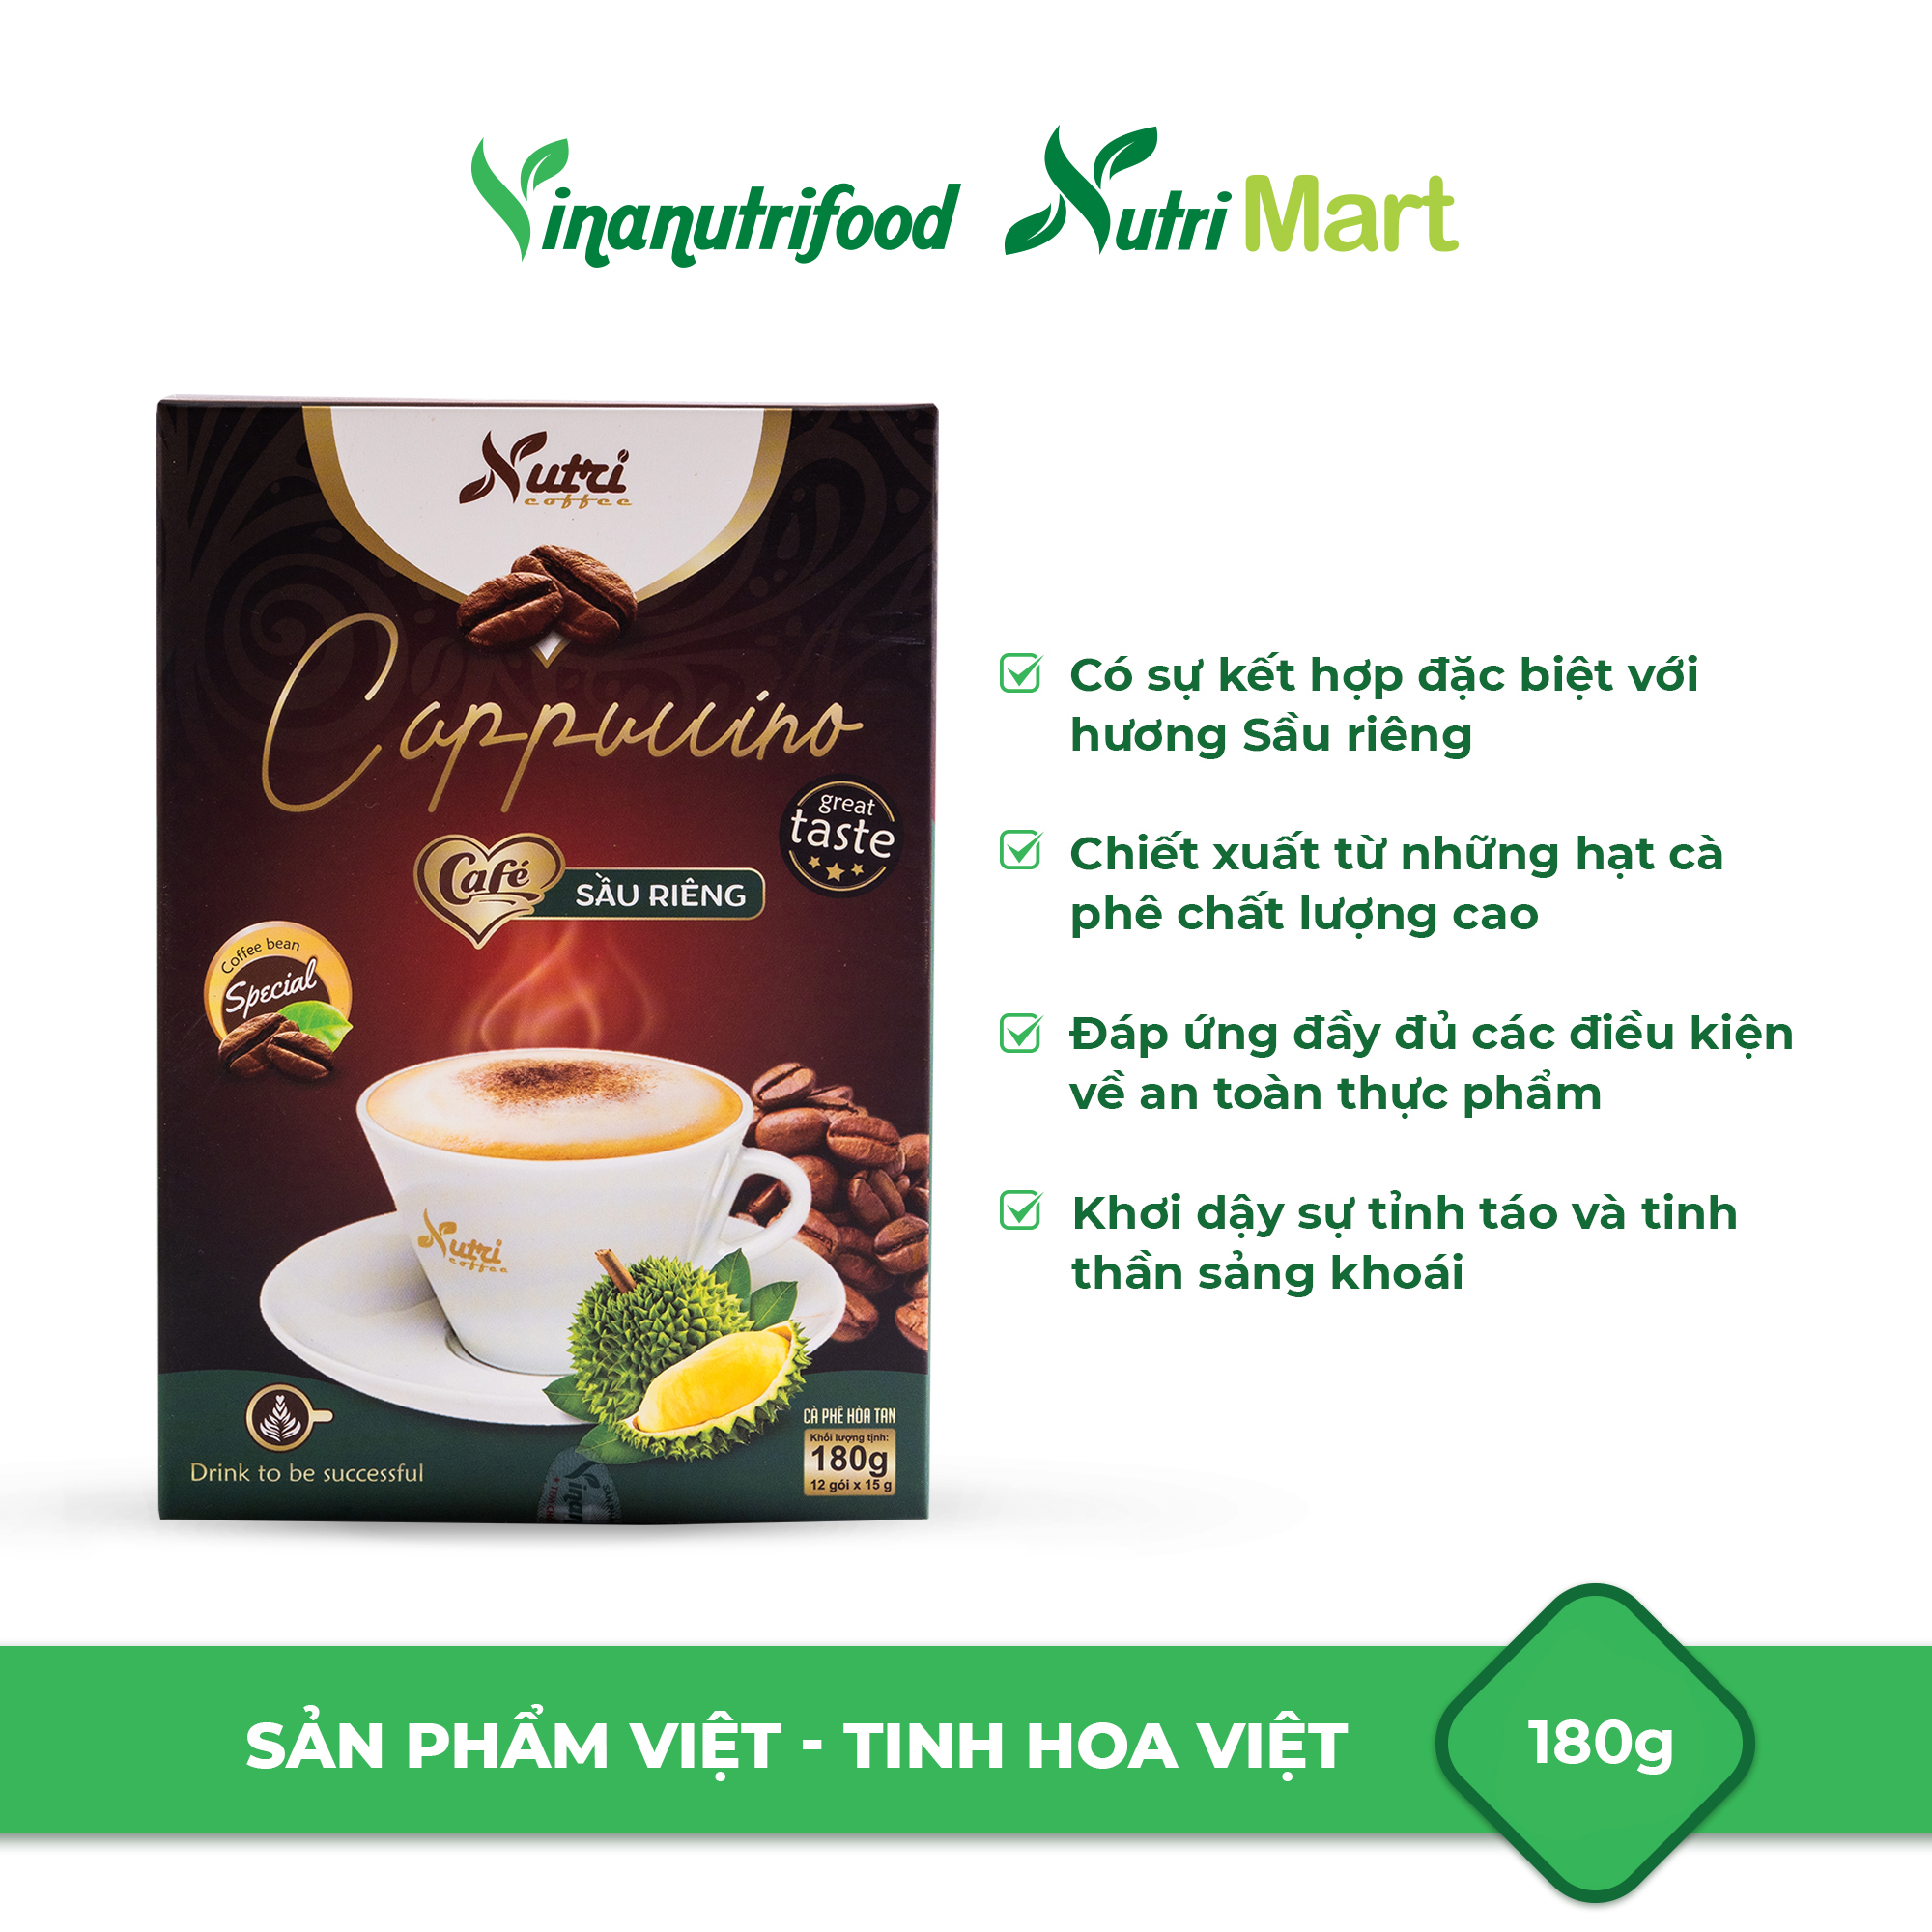 Cà phê capuchino sầu riêng Vinanutrifood C02, cafe sở hữu hương vị đặc trưng, thơm ngon hấp dẫn phù hợp mọi đối tượng, giúp giải tỏa căng thẳng, mệt mỏi, đảm bảo an toàn thực phẩm đáp ứng đầy đủ tiêu chuẩn GMP - WHO (15g x 12 gói)